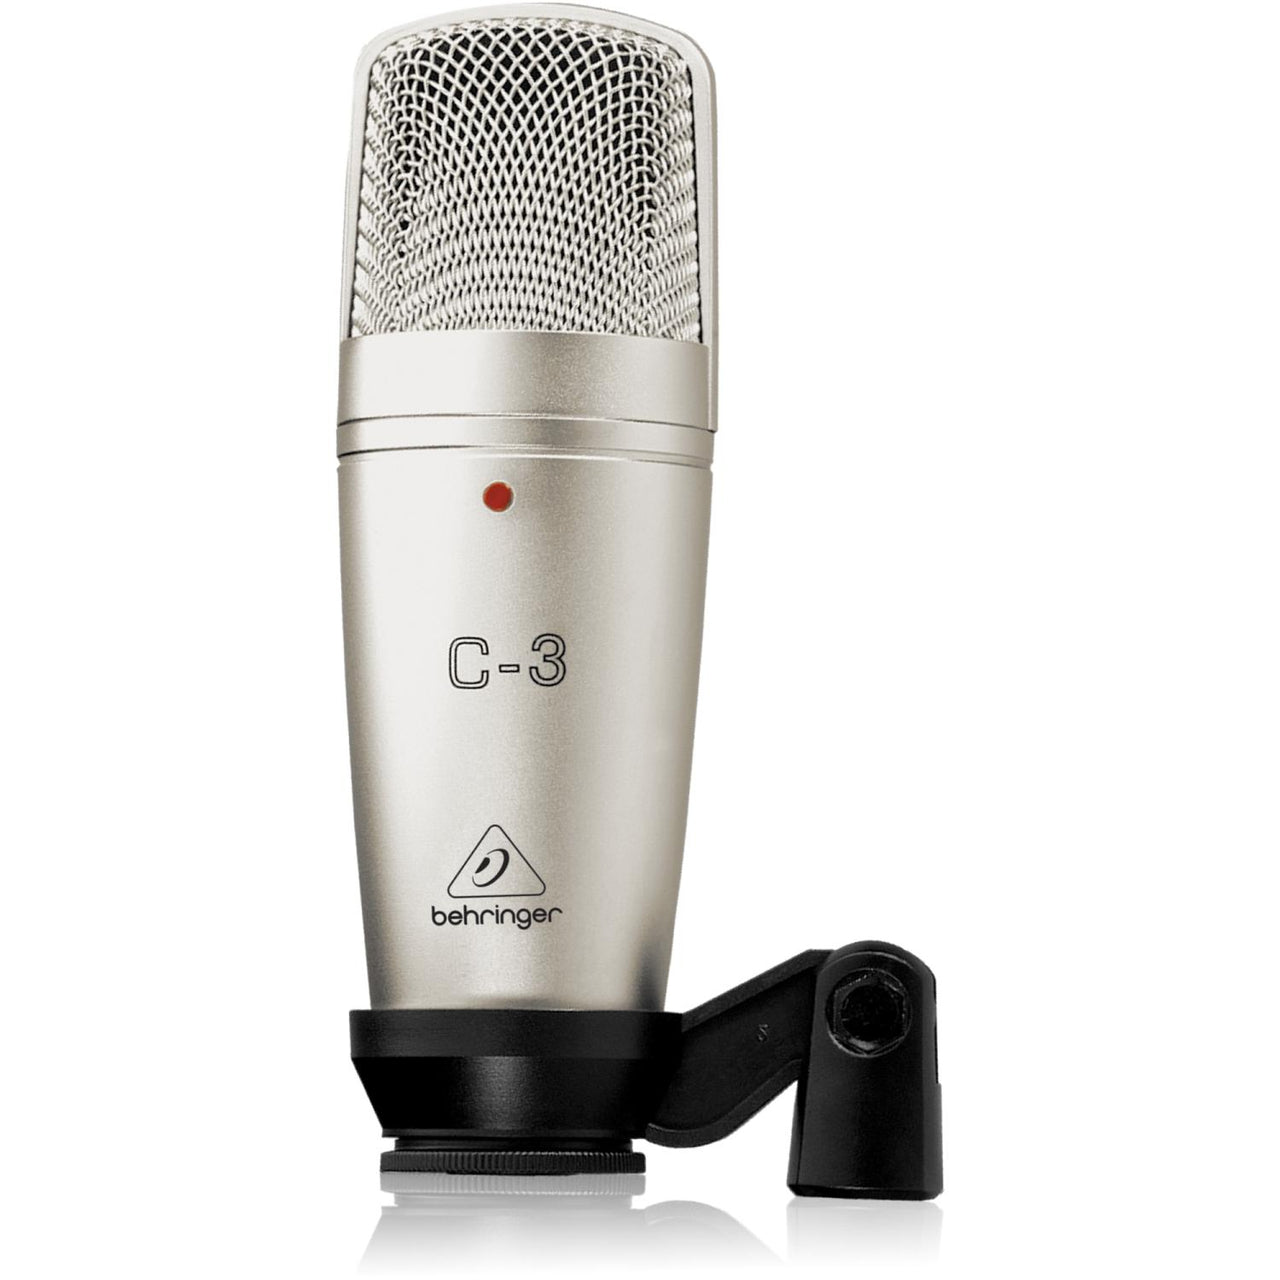 Microfono Behringer De Estudio Doble Condensador, C-3